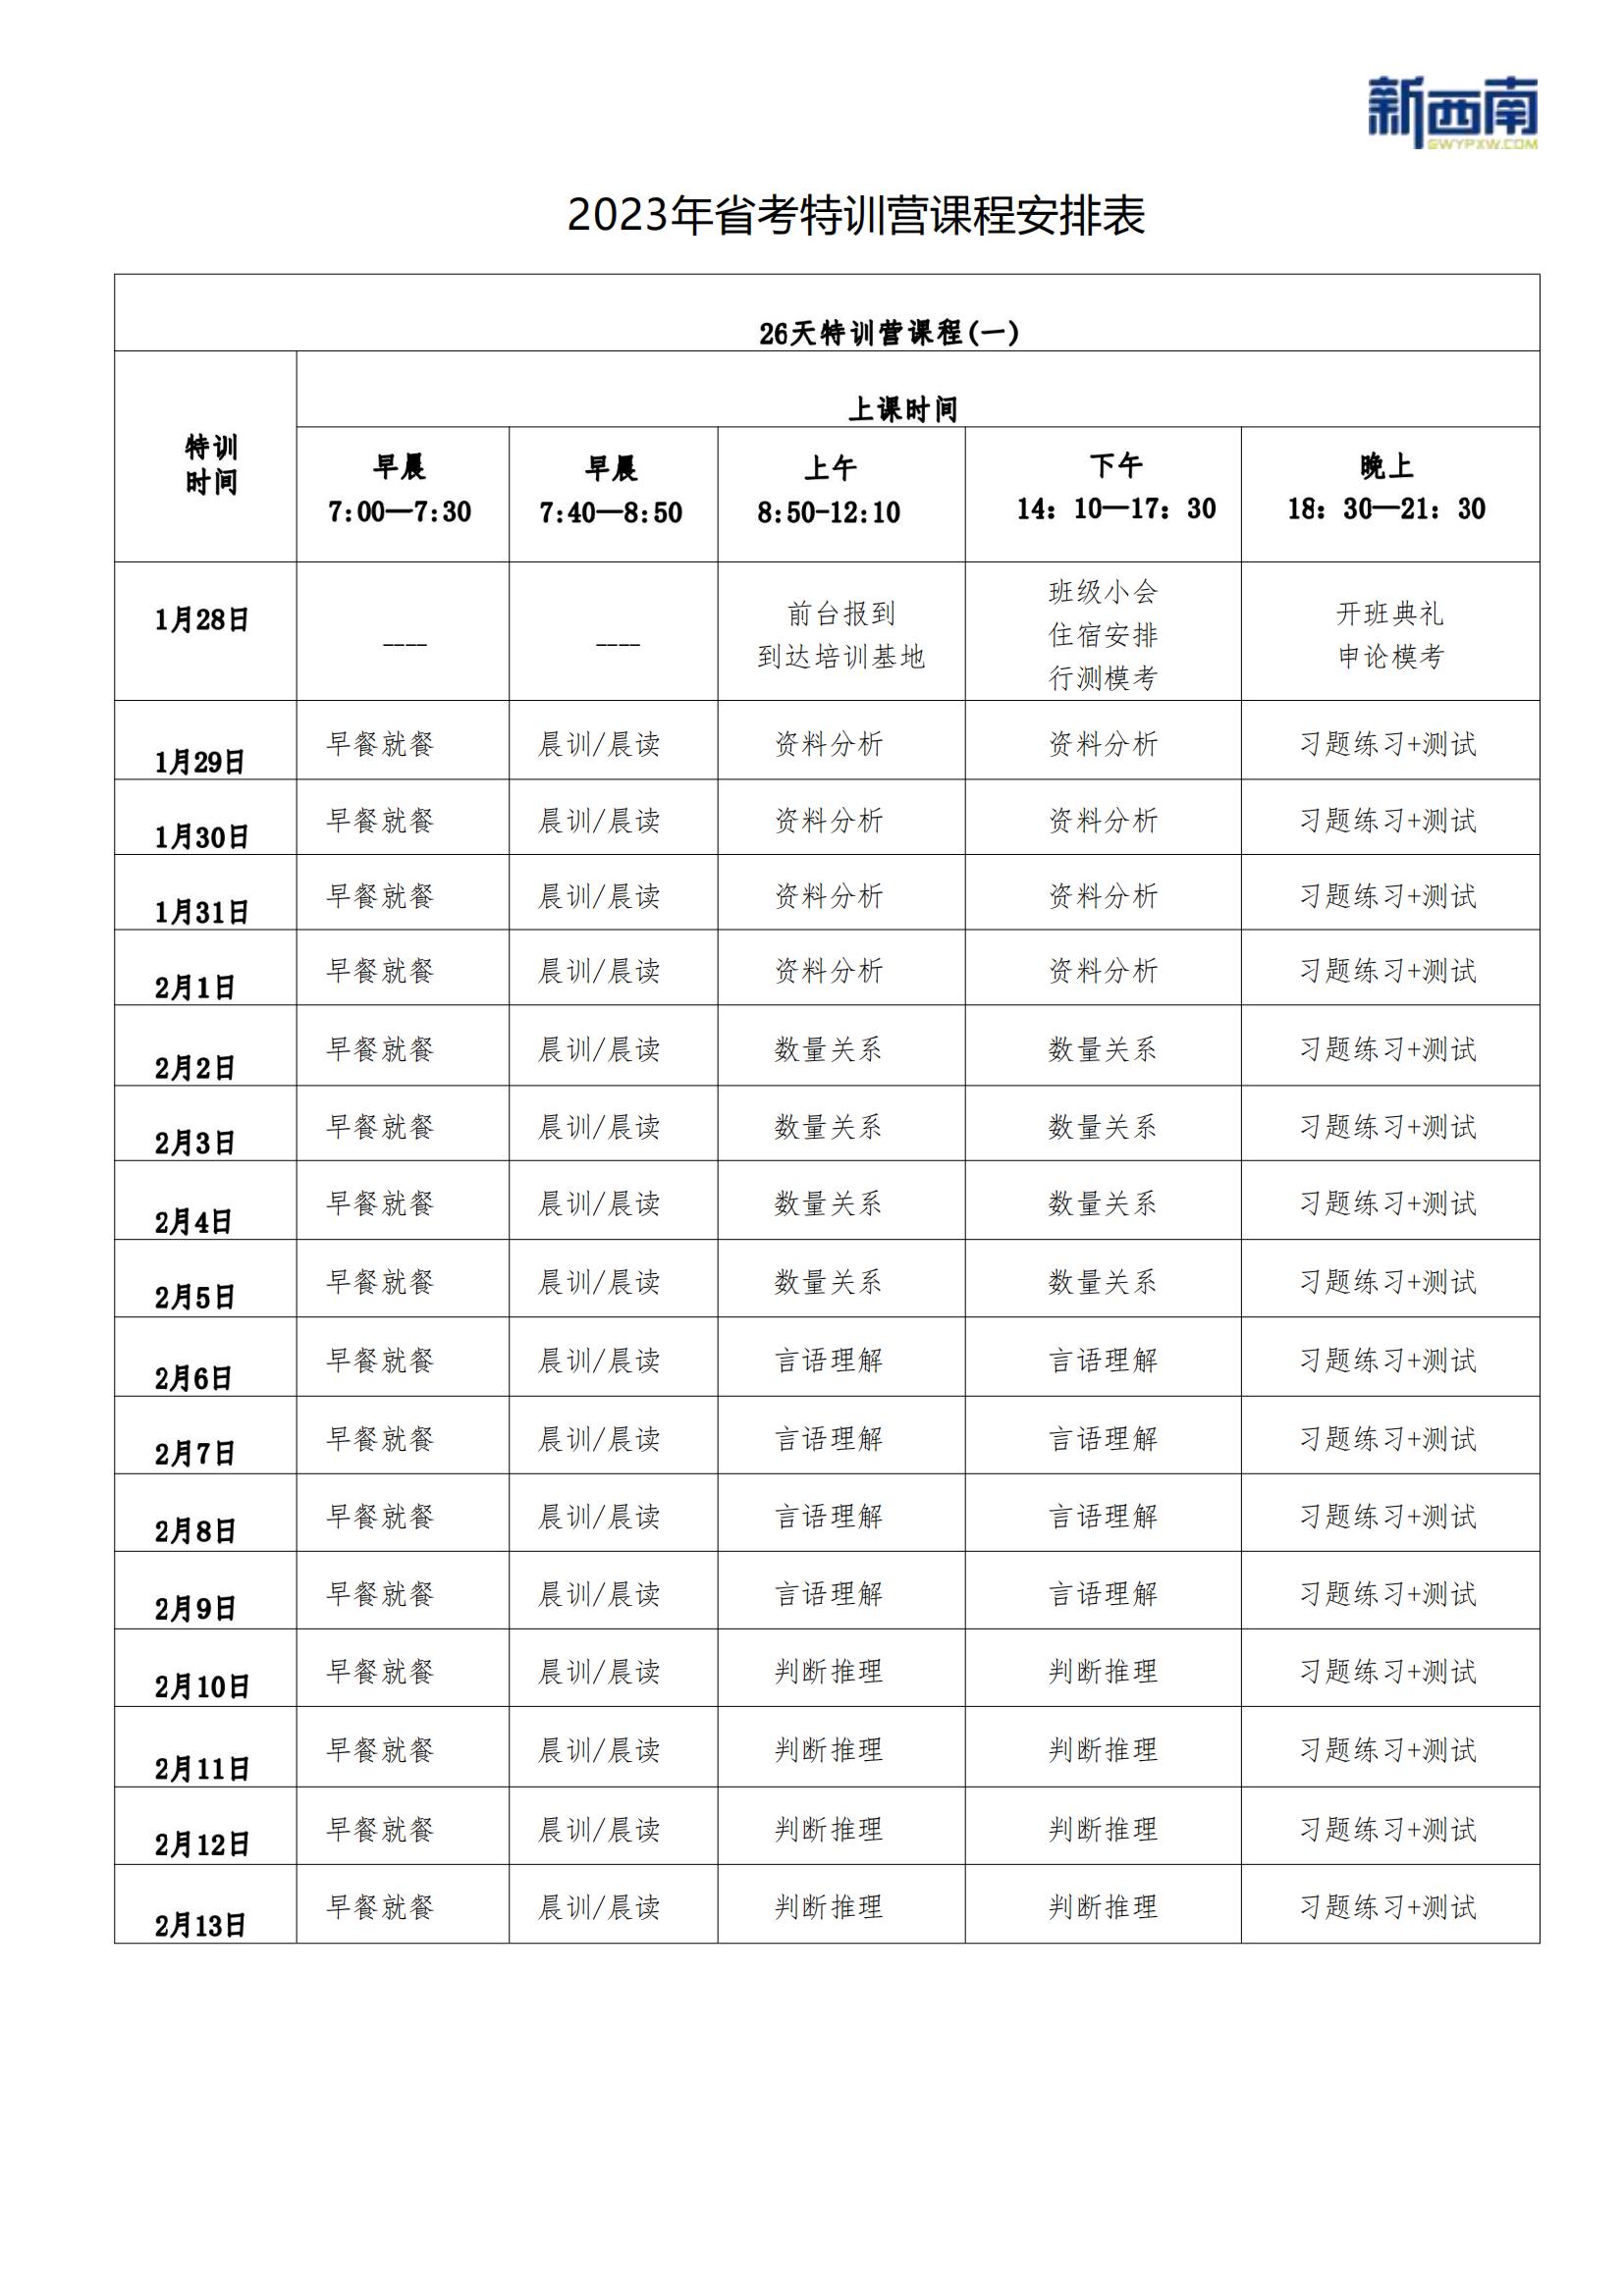 2023省考特訓營課程安排 (1月28日)_00(1).jpg